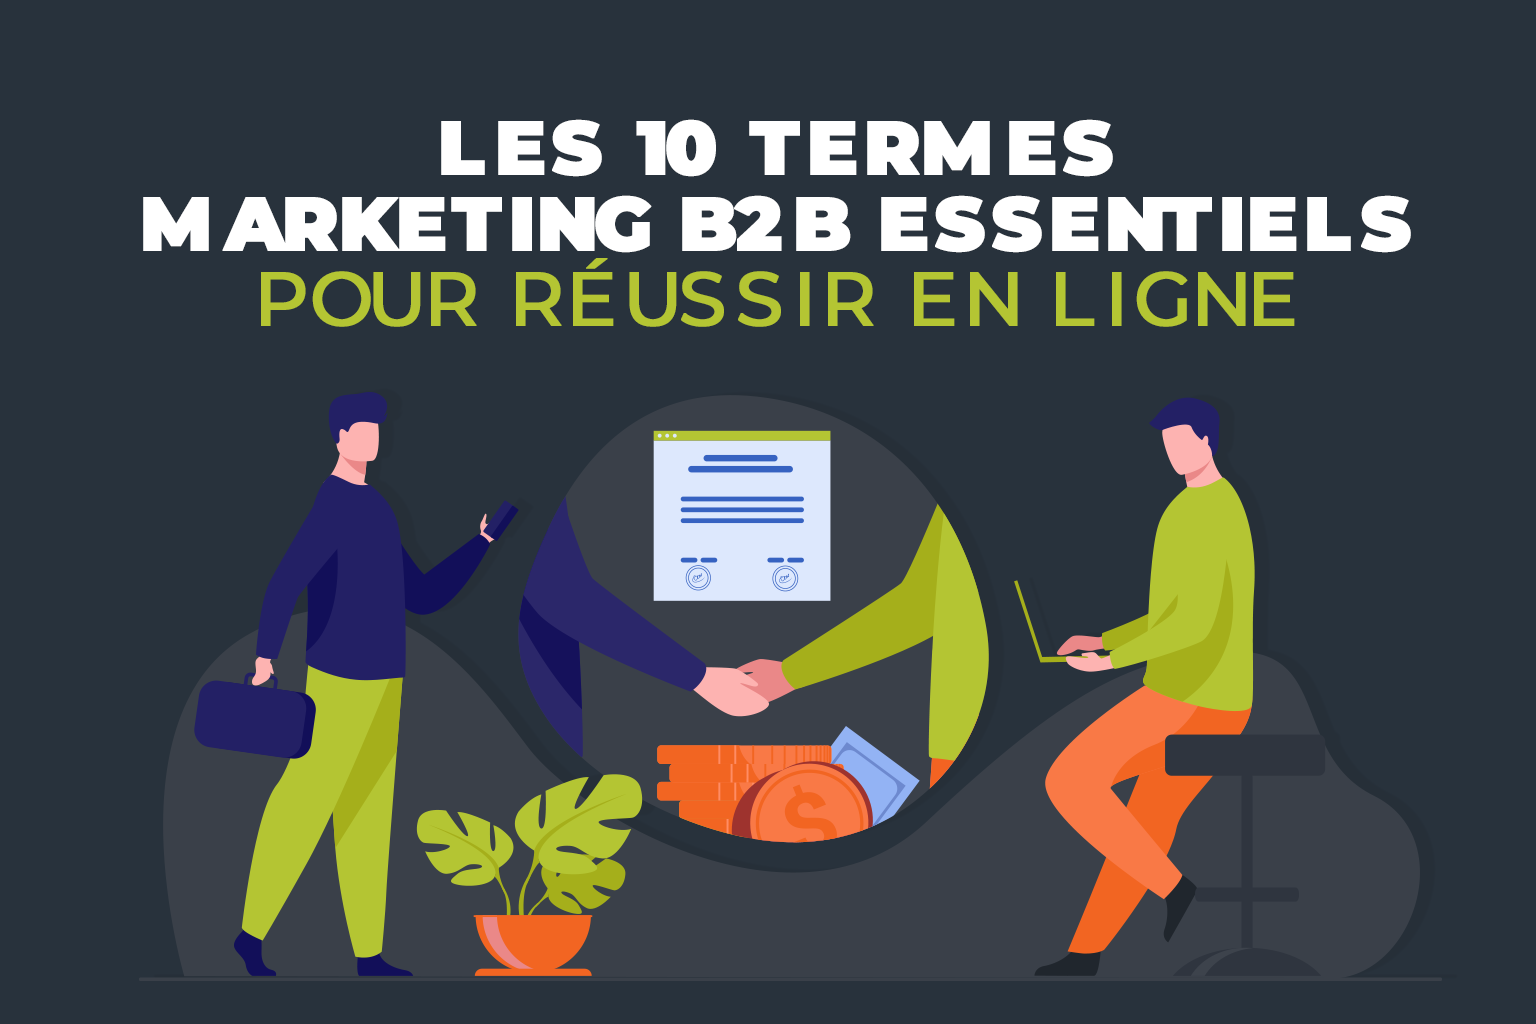 Les-10-Termes-Marketing-B2B-Essentiels-pour-Reussir-en-Ligne